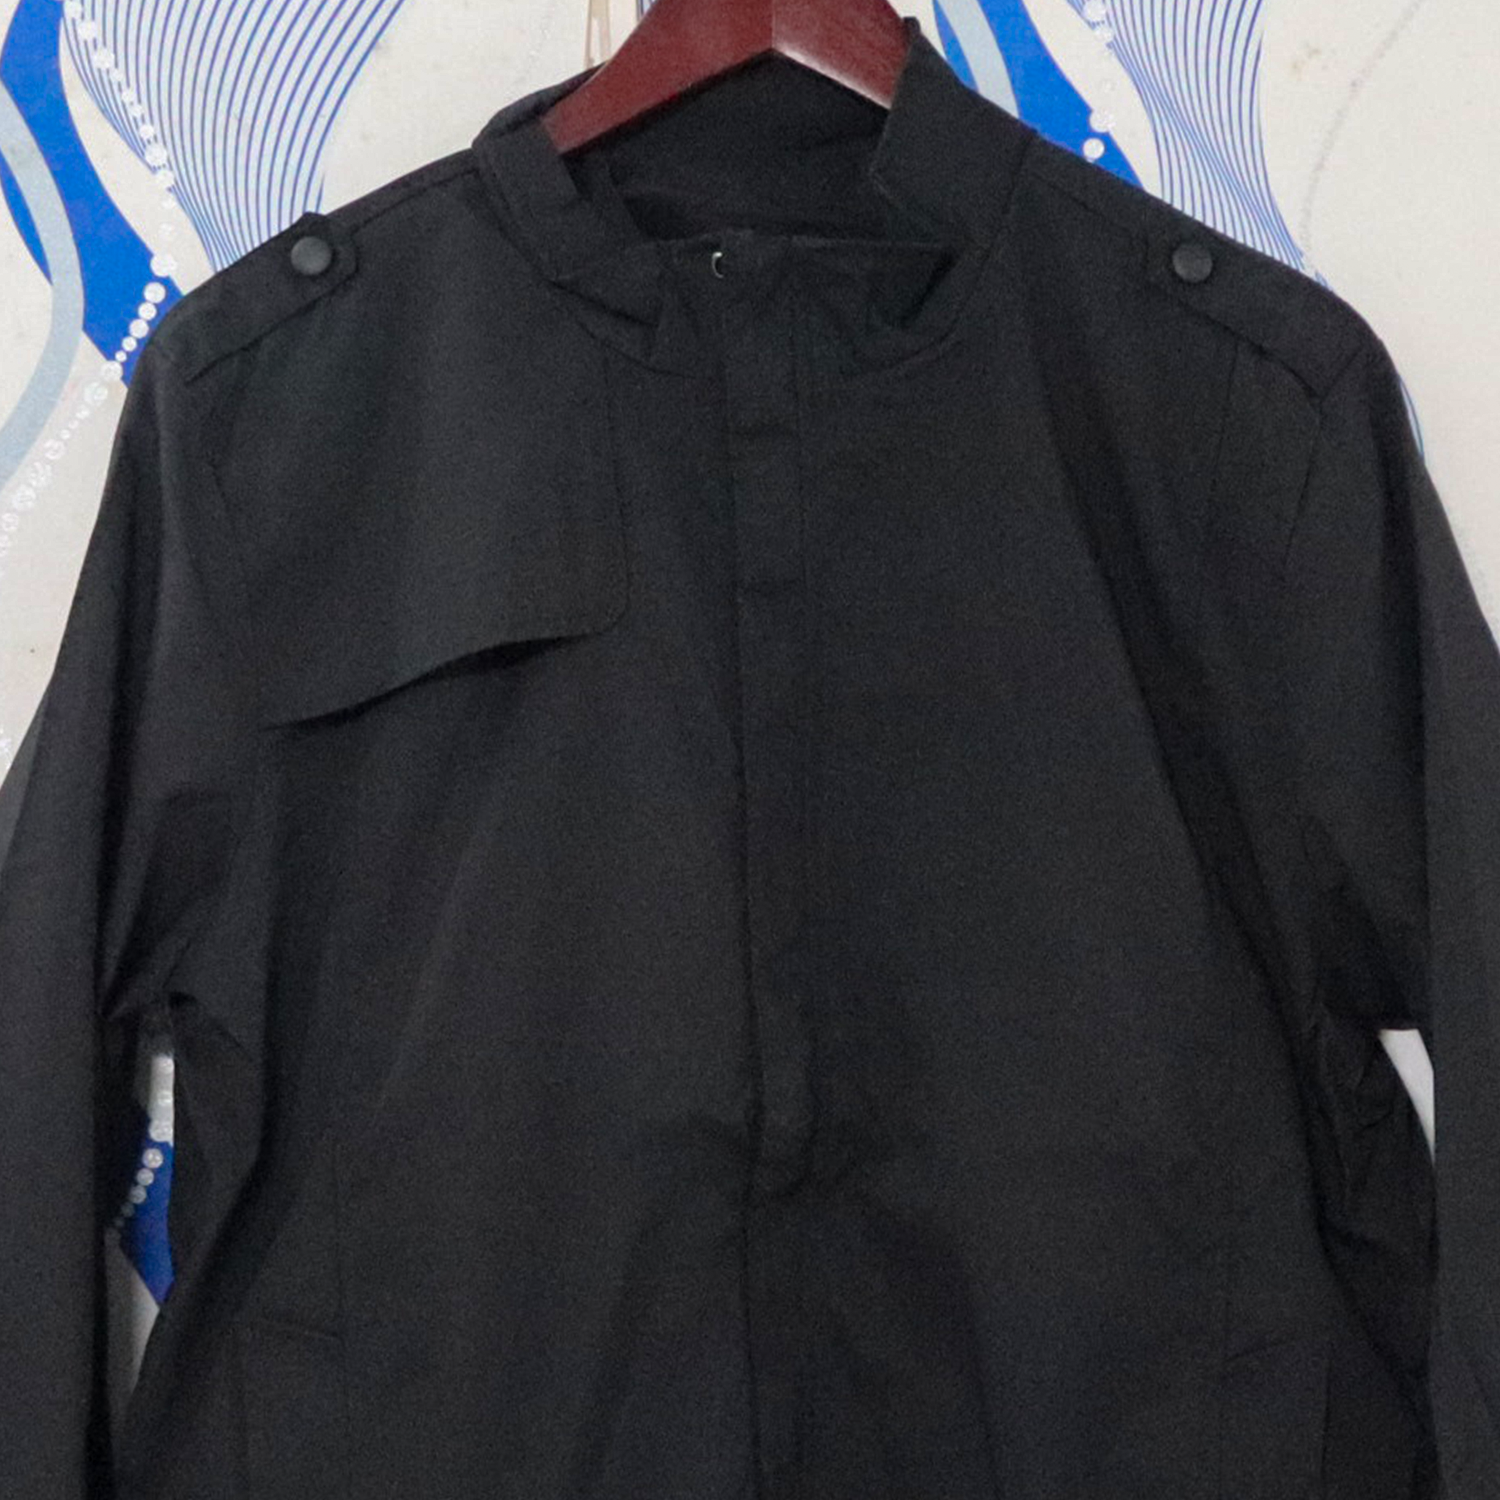 URSPORTTECH Men's Slim Fit Solid Color Bomber Jacket